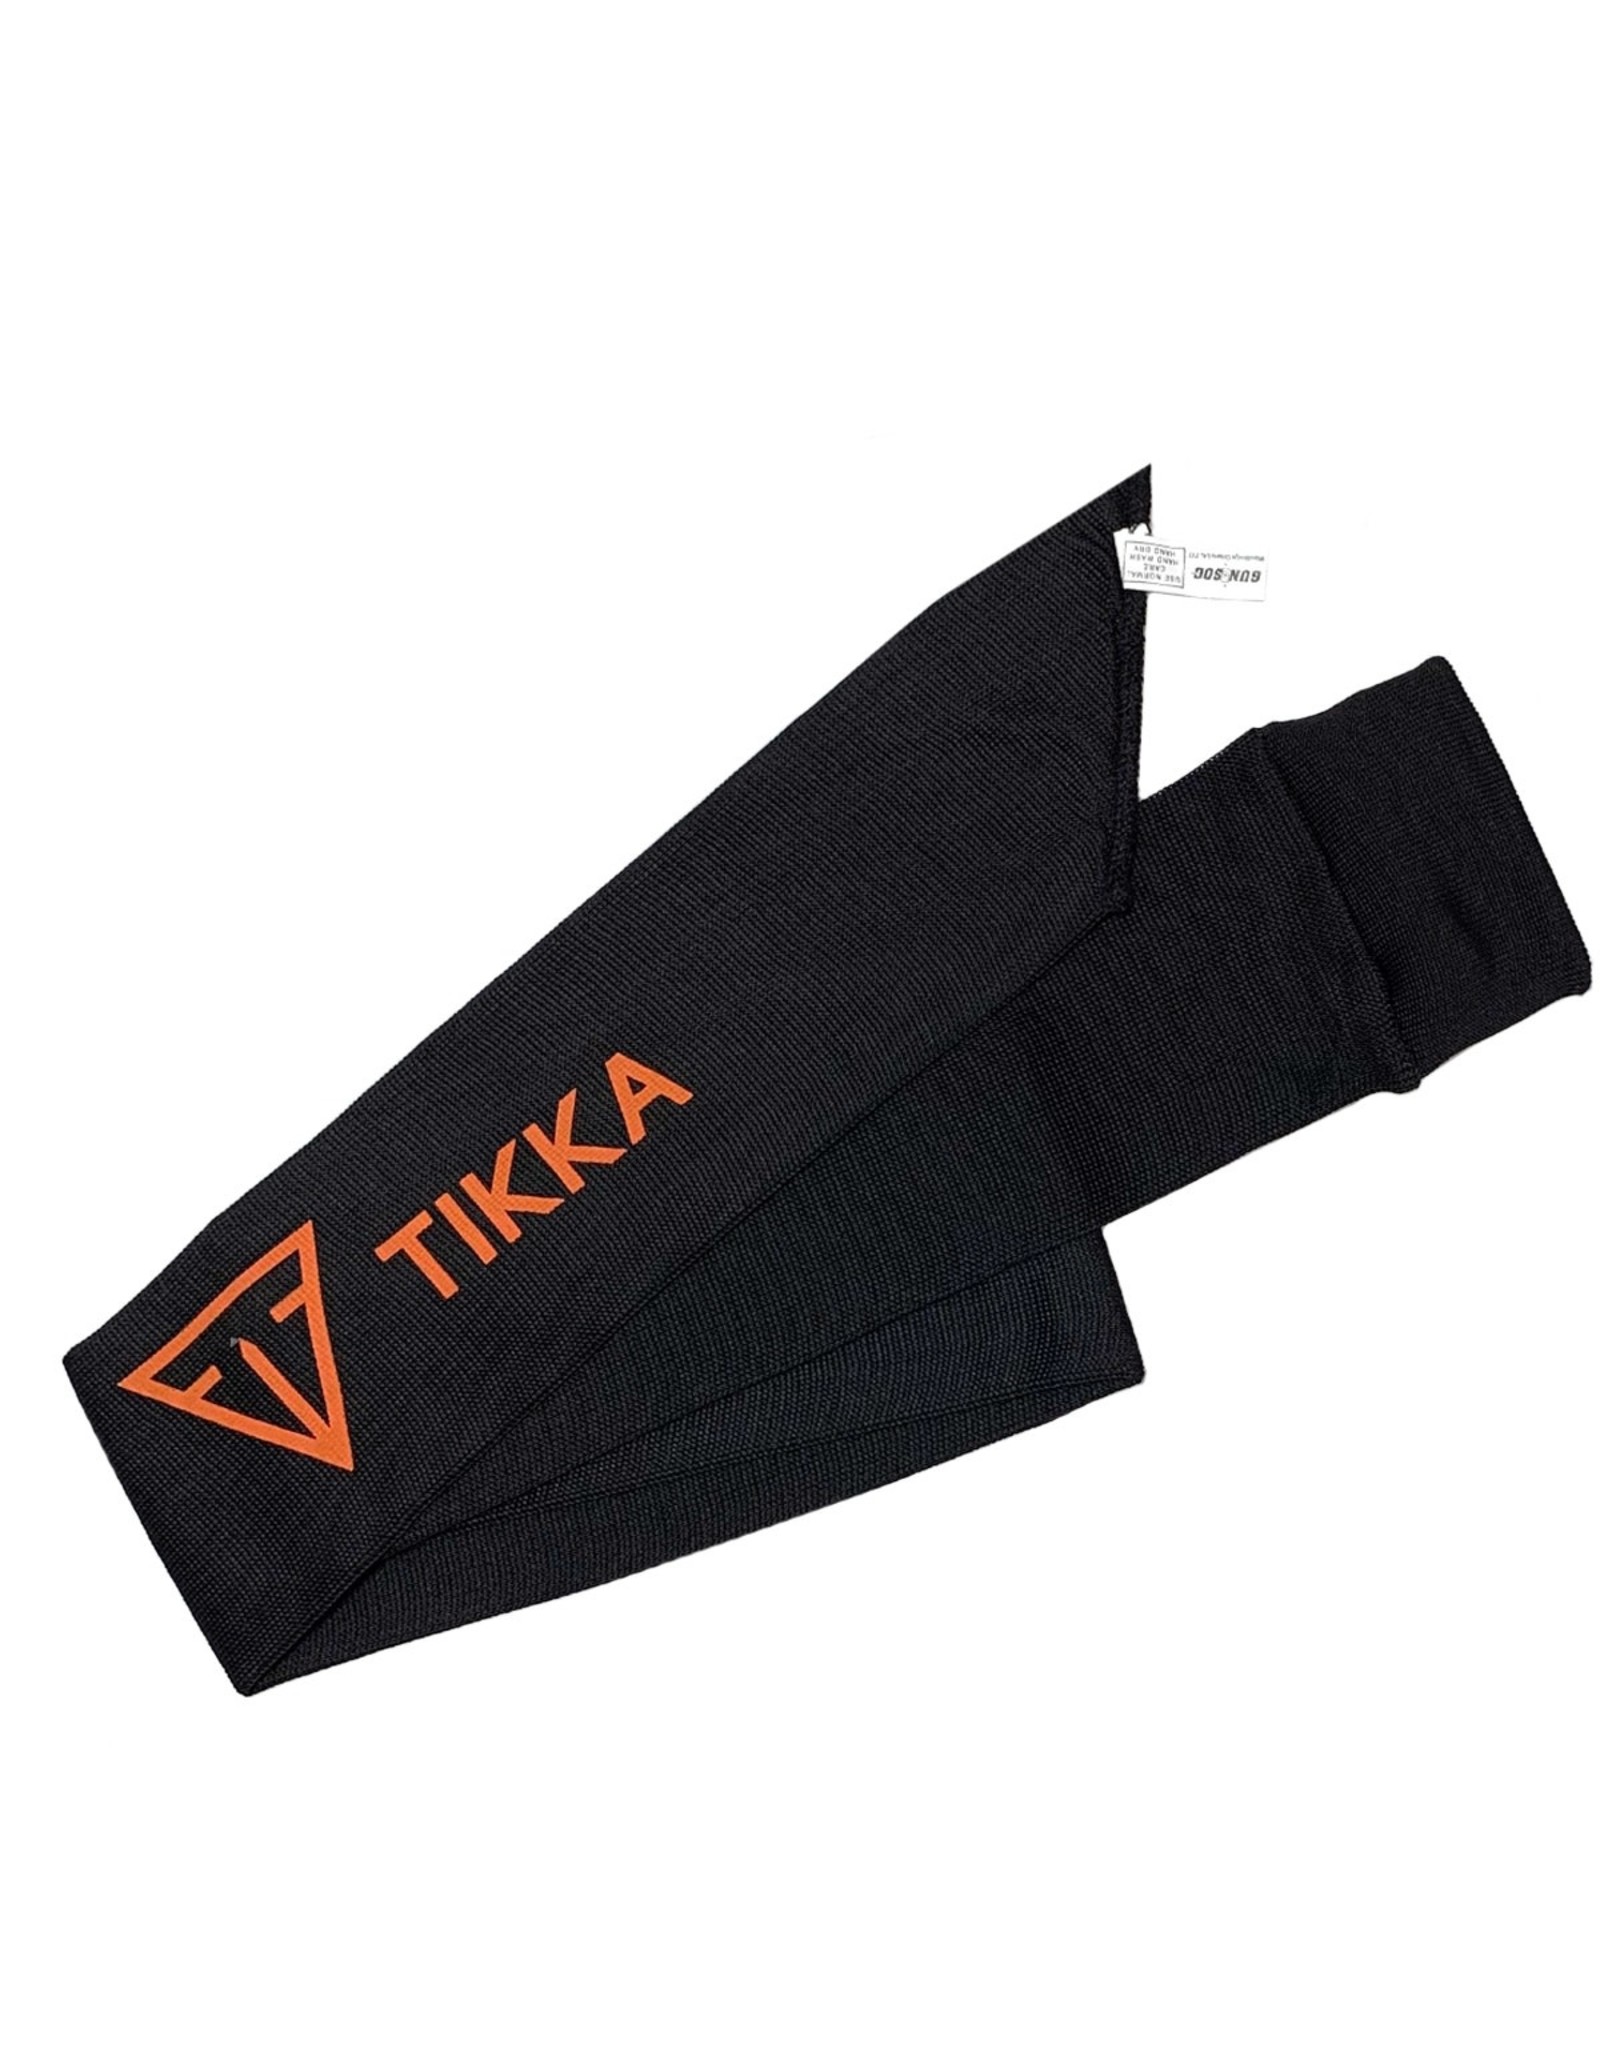 Tikka Tikka VCI Gun Sock 52in – Black